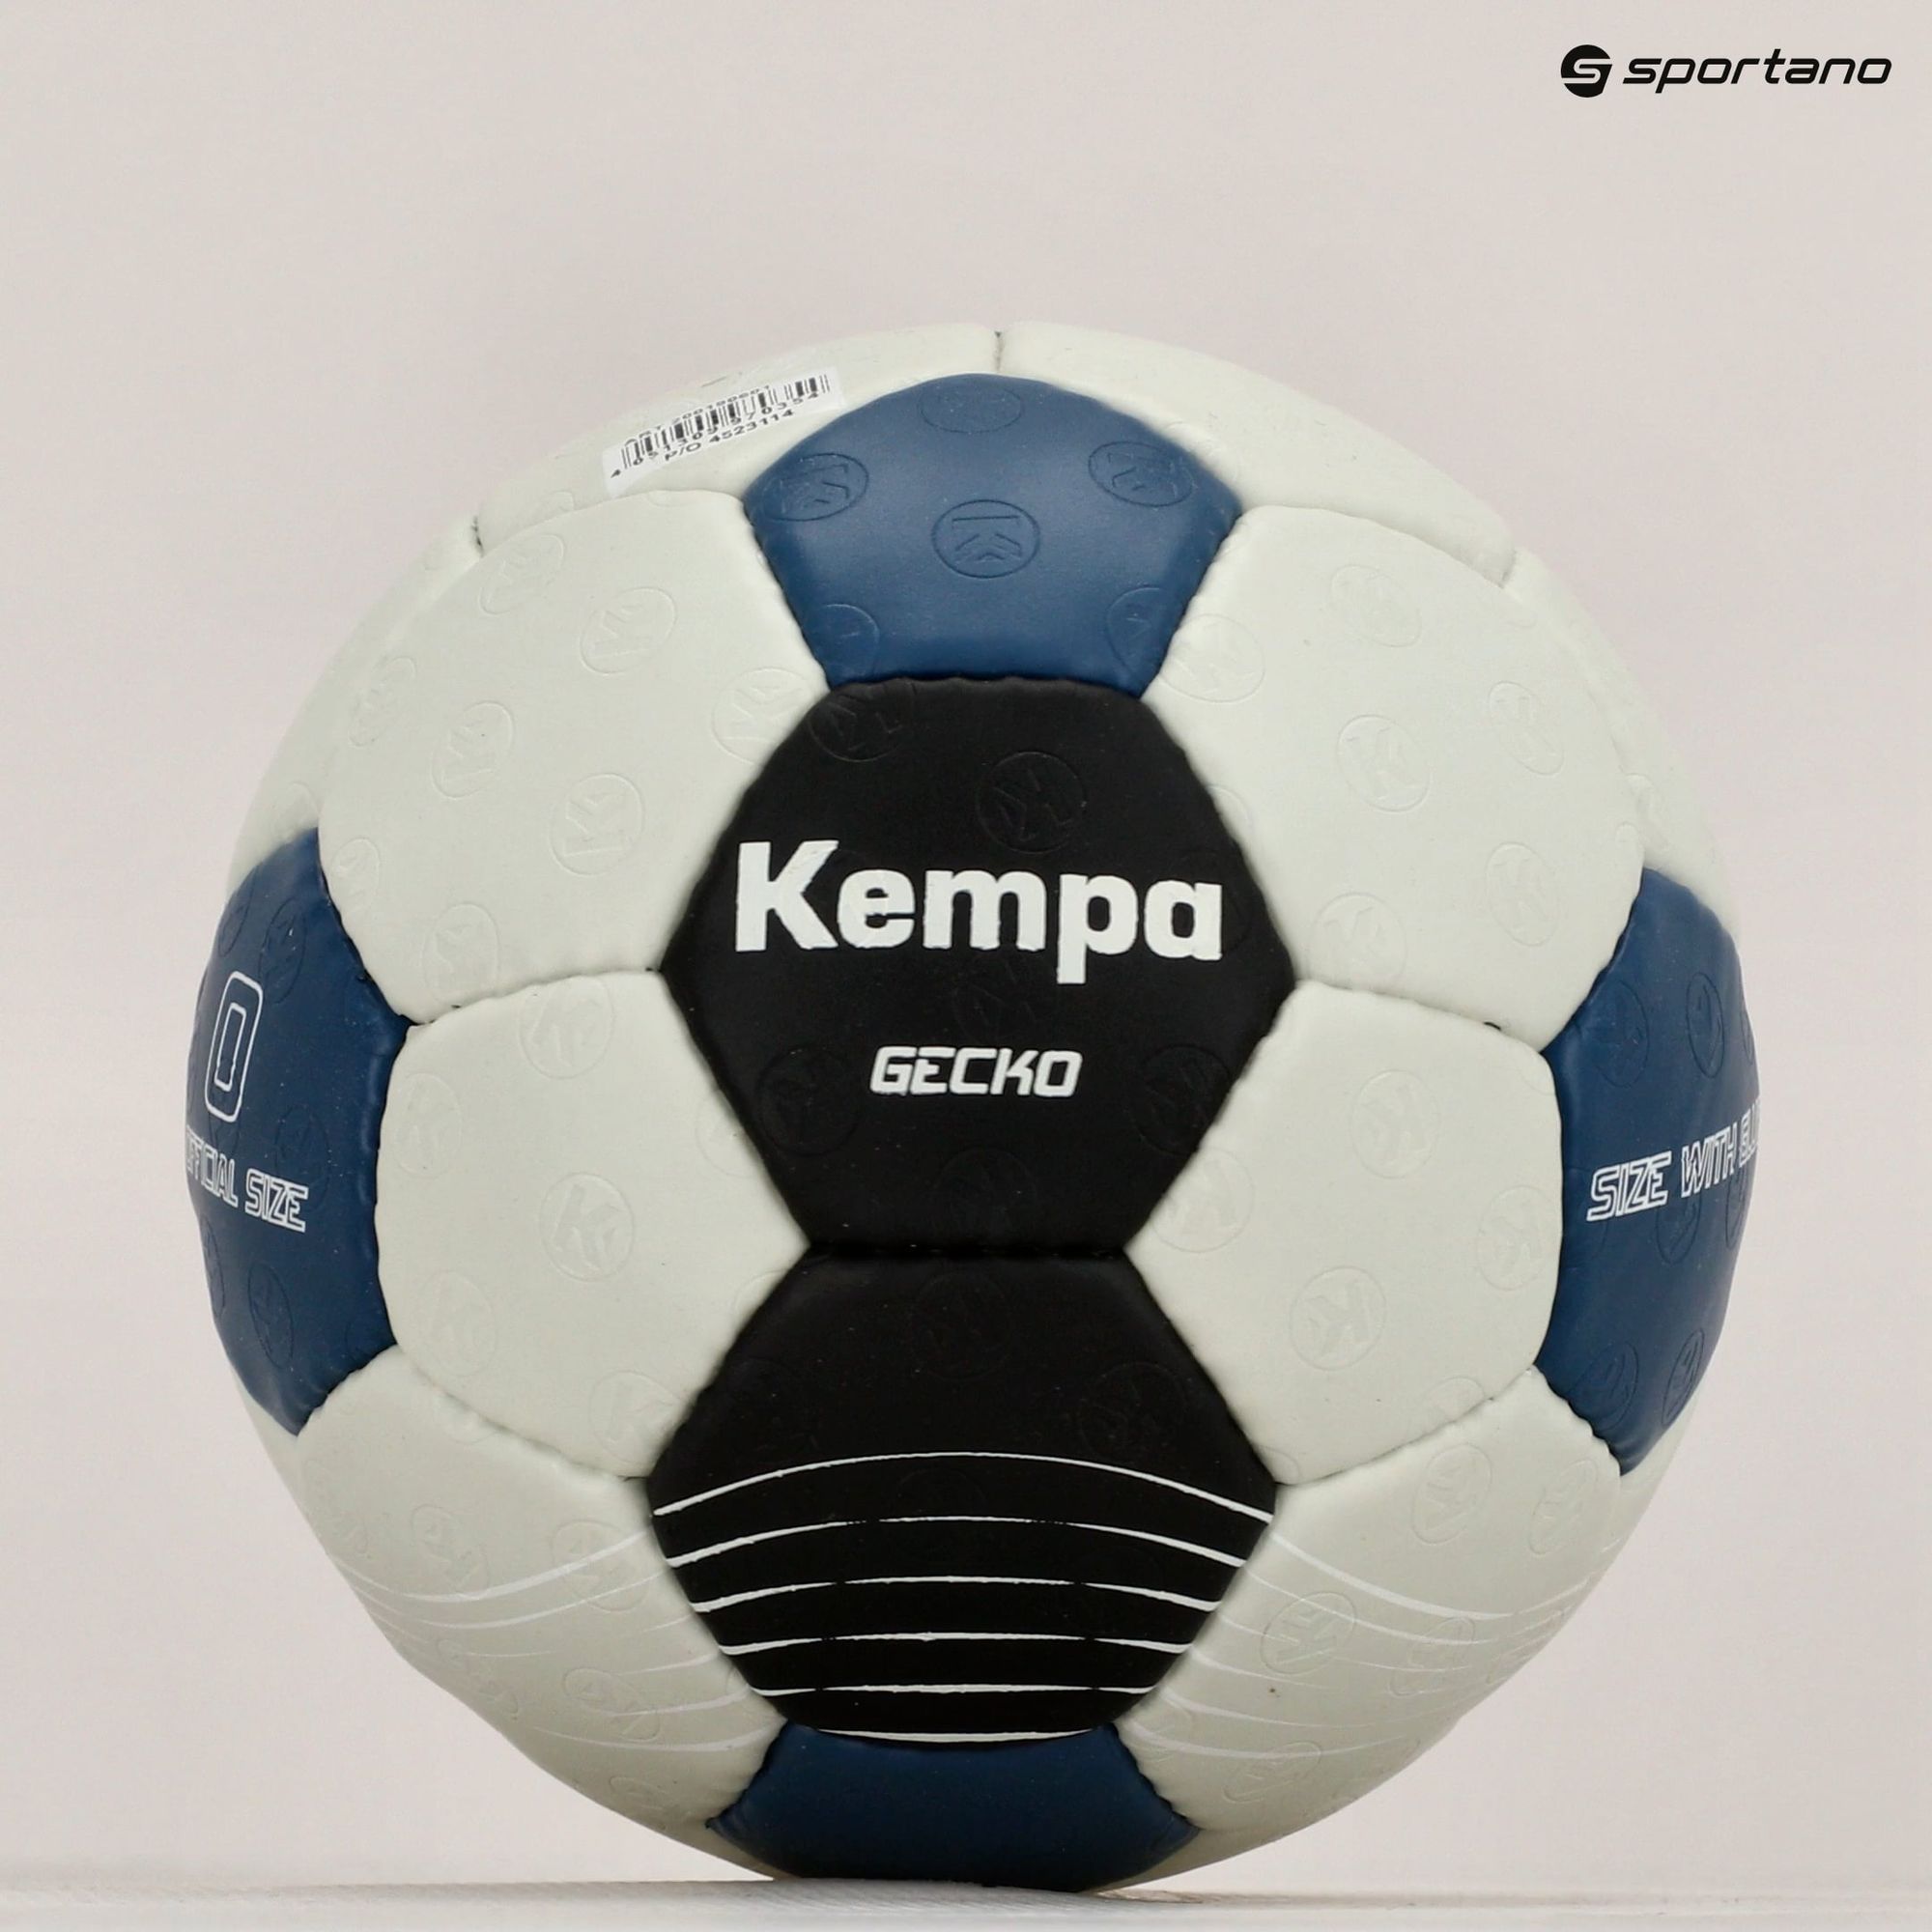 Piłka do piłki ręcznej Kempa Gecko szara/niebieska rozmiar 0 zdjęcie nr 5